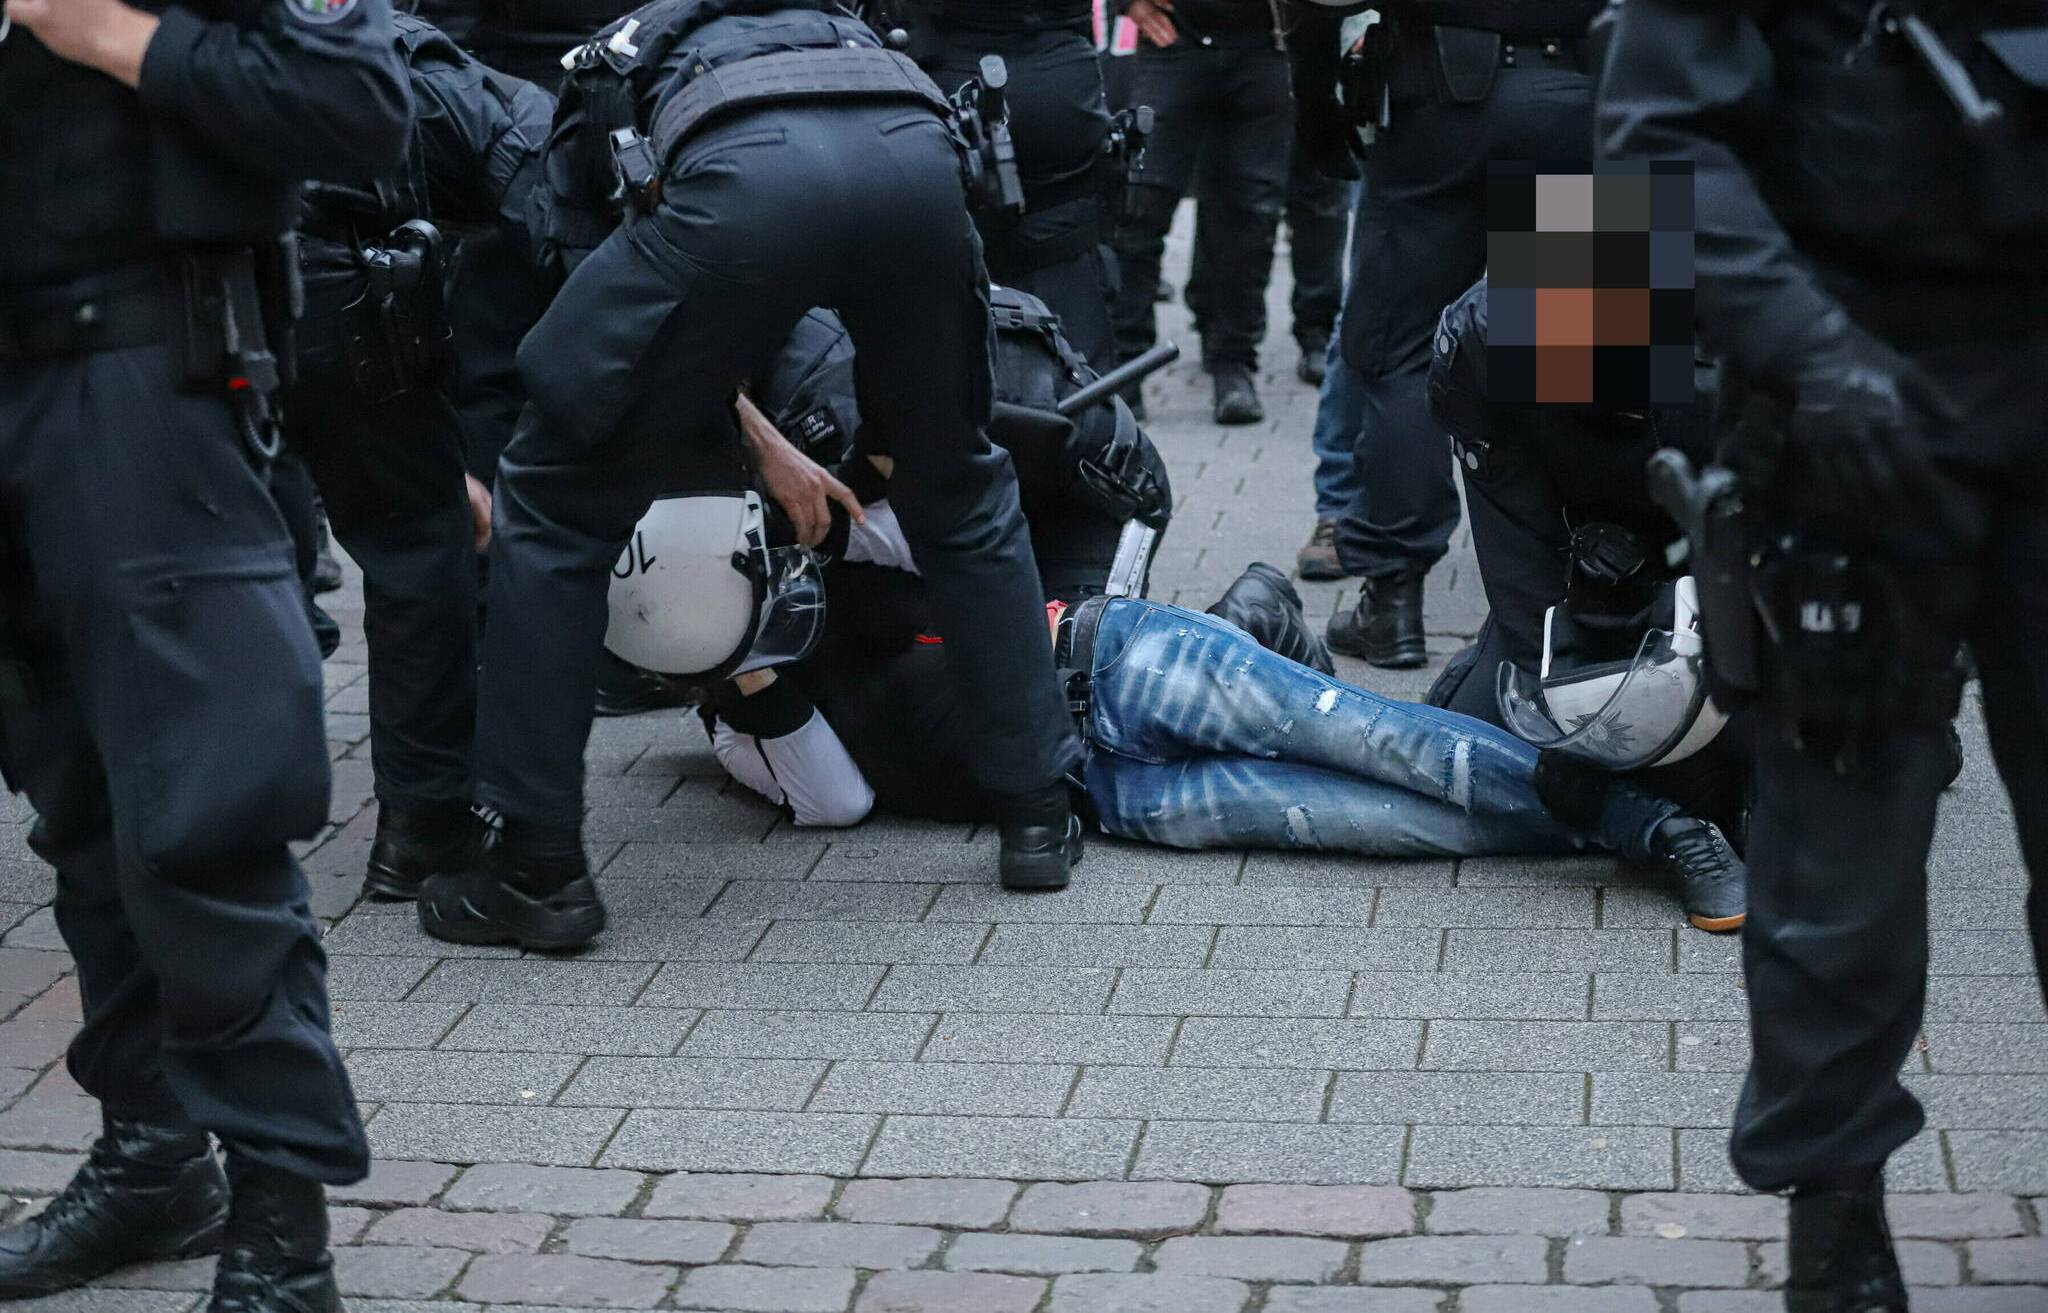 Ein Unbeteiligter griff Demonstrierende an und wurde festgenommen.